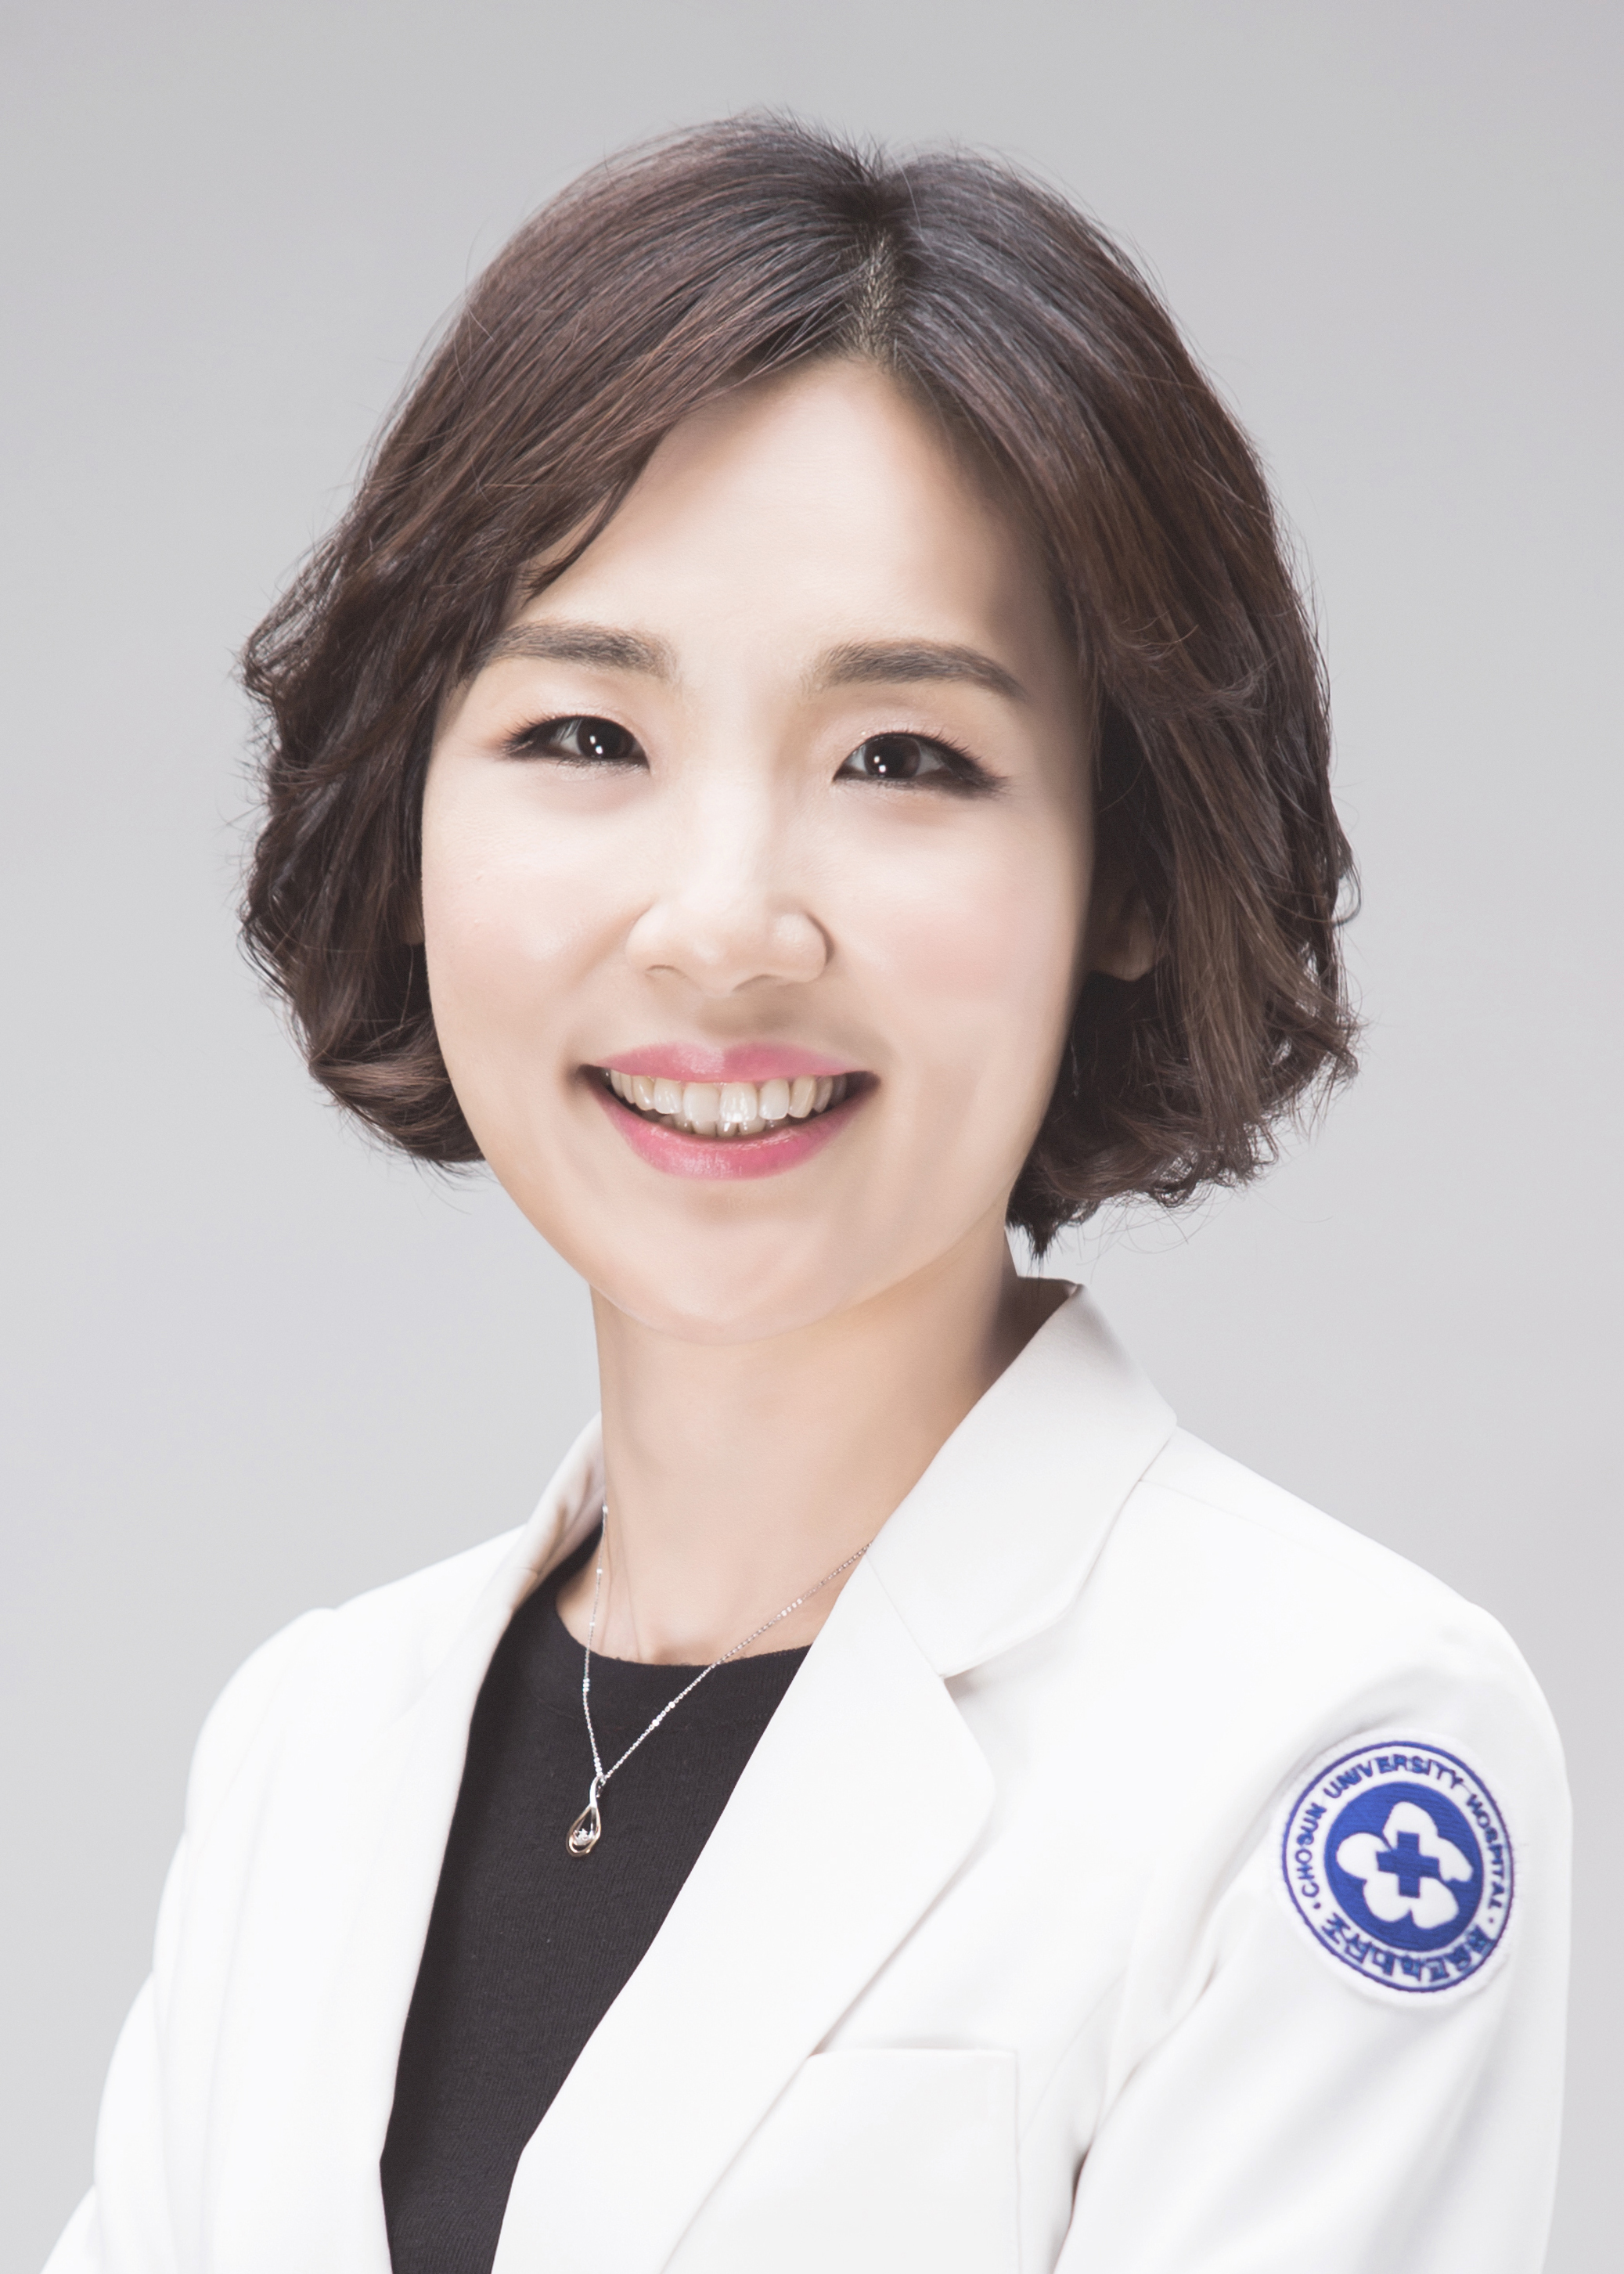 김진화 교수